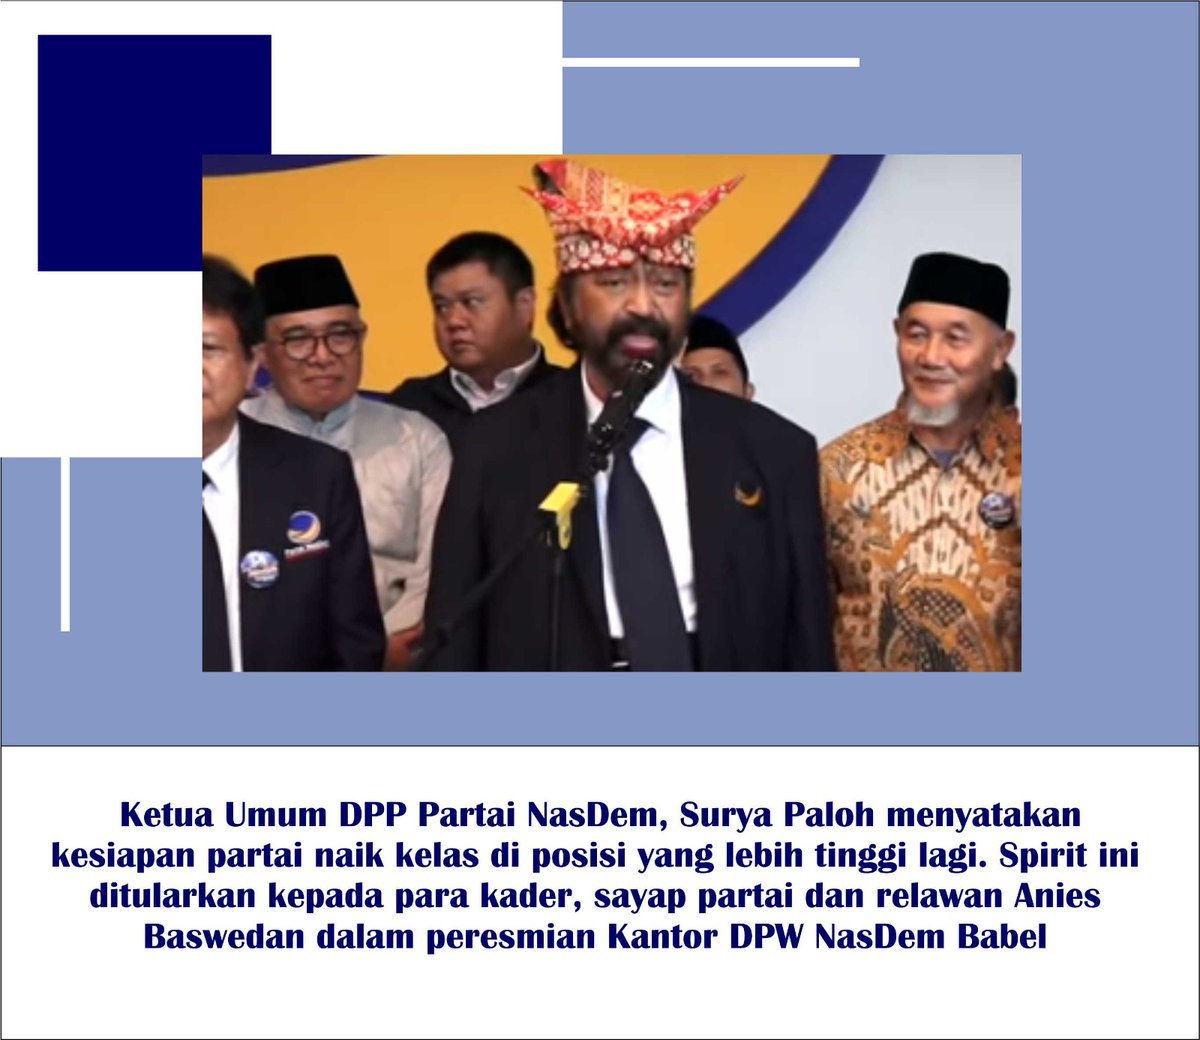 Pak Surya Paloh menyatakan bahwa Nasdem siap untuk naik kelas di posisi yang lebih tinggi lagi
#ItsTimeRestorasiIndonesia
#NasdemNo5
#AniesPresidenku
#NasDemPilihannya